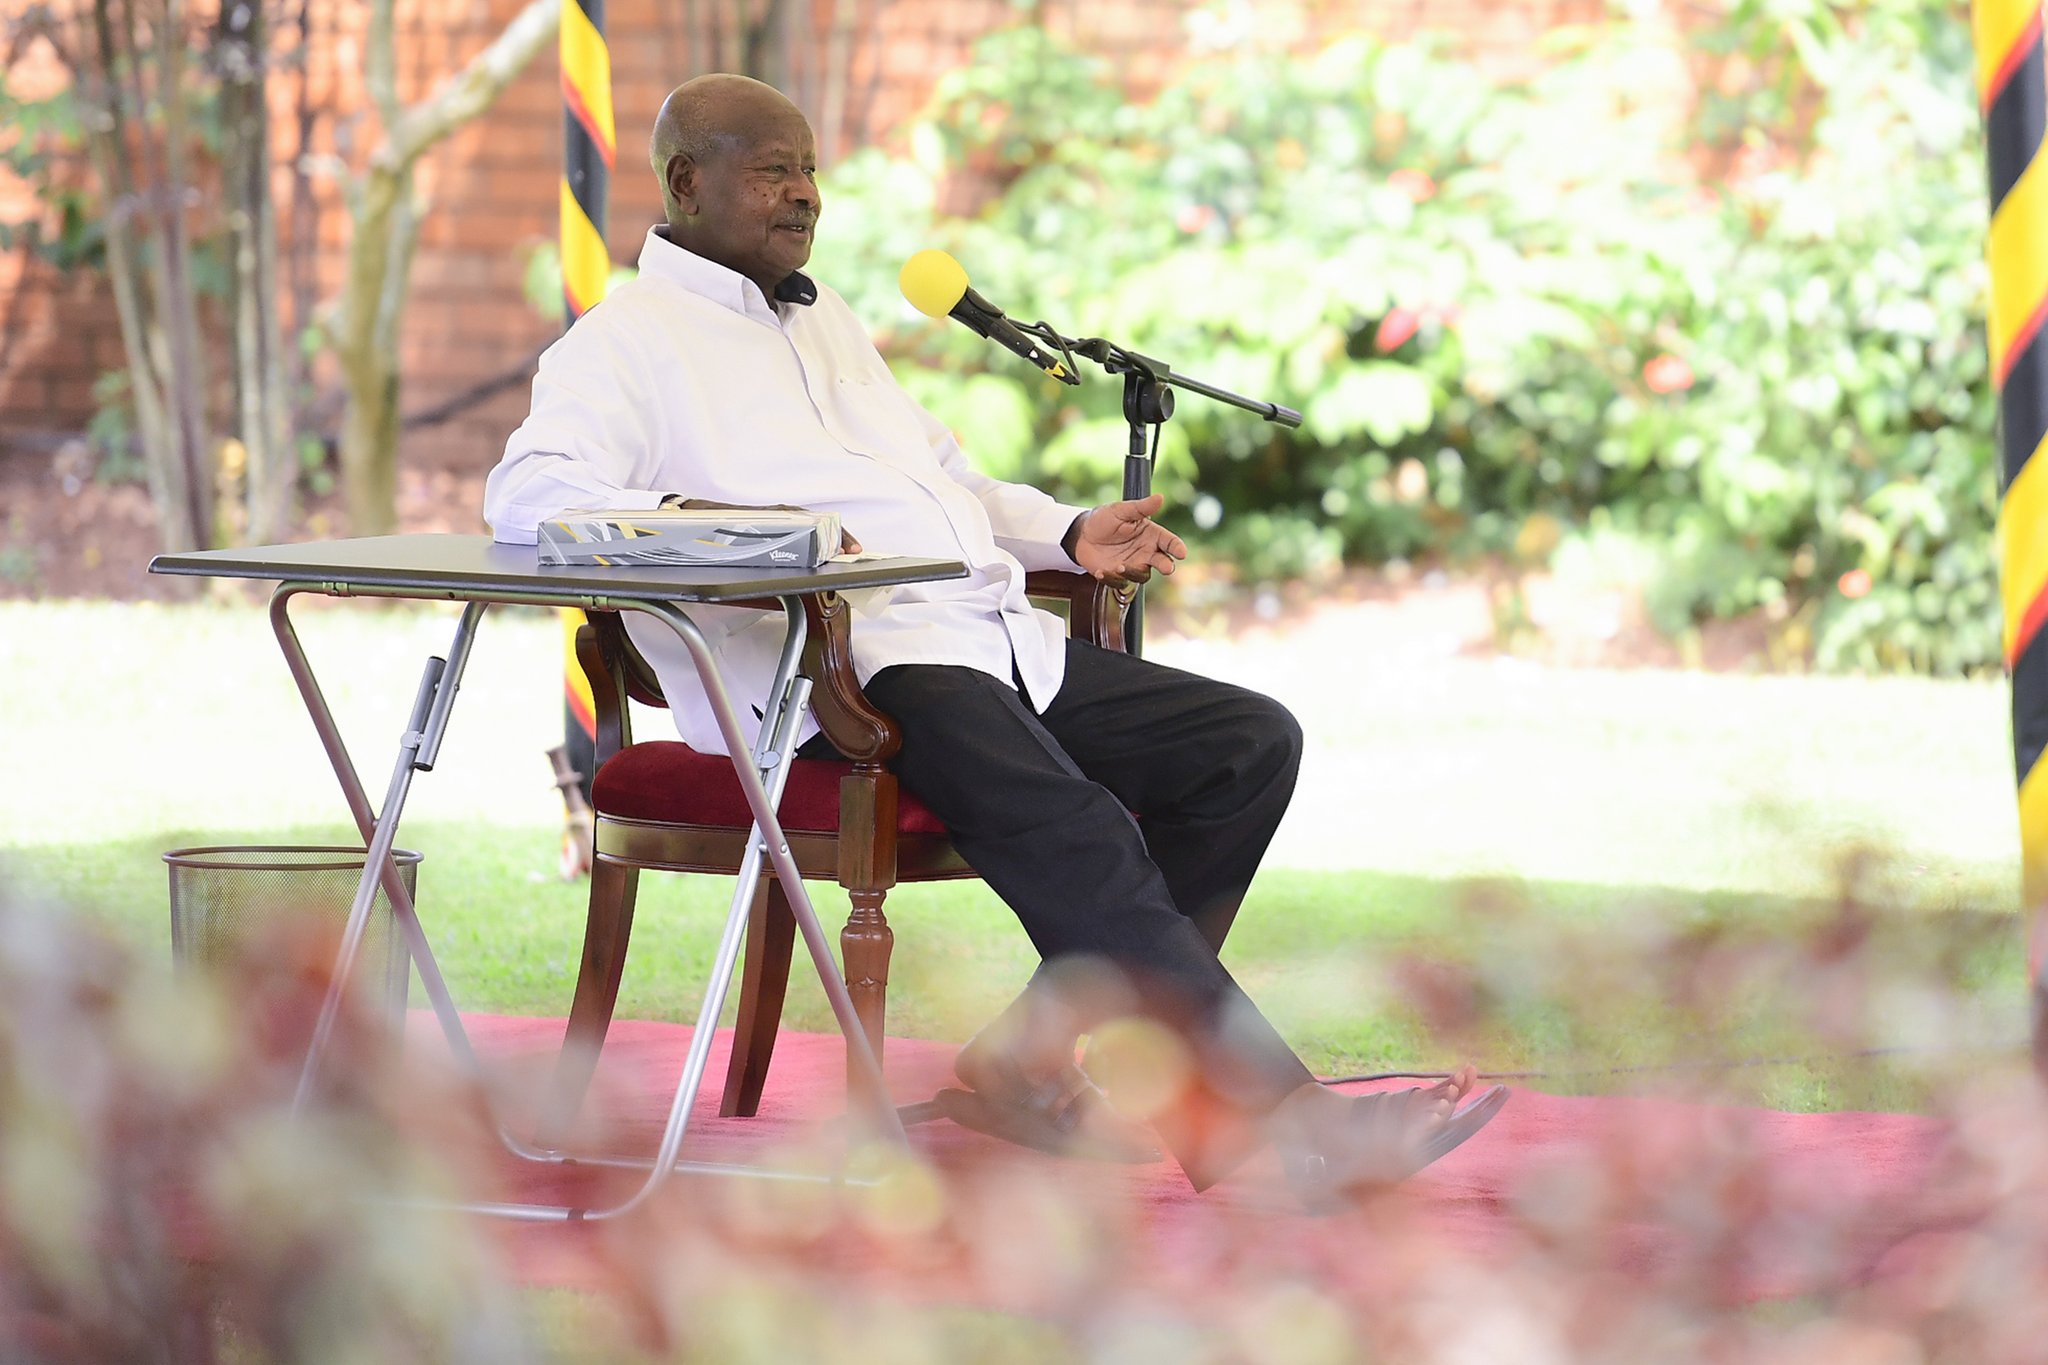 Museveni Apologizes to Kenyans Over Muhoozi Kainerugaba’s Tweets